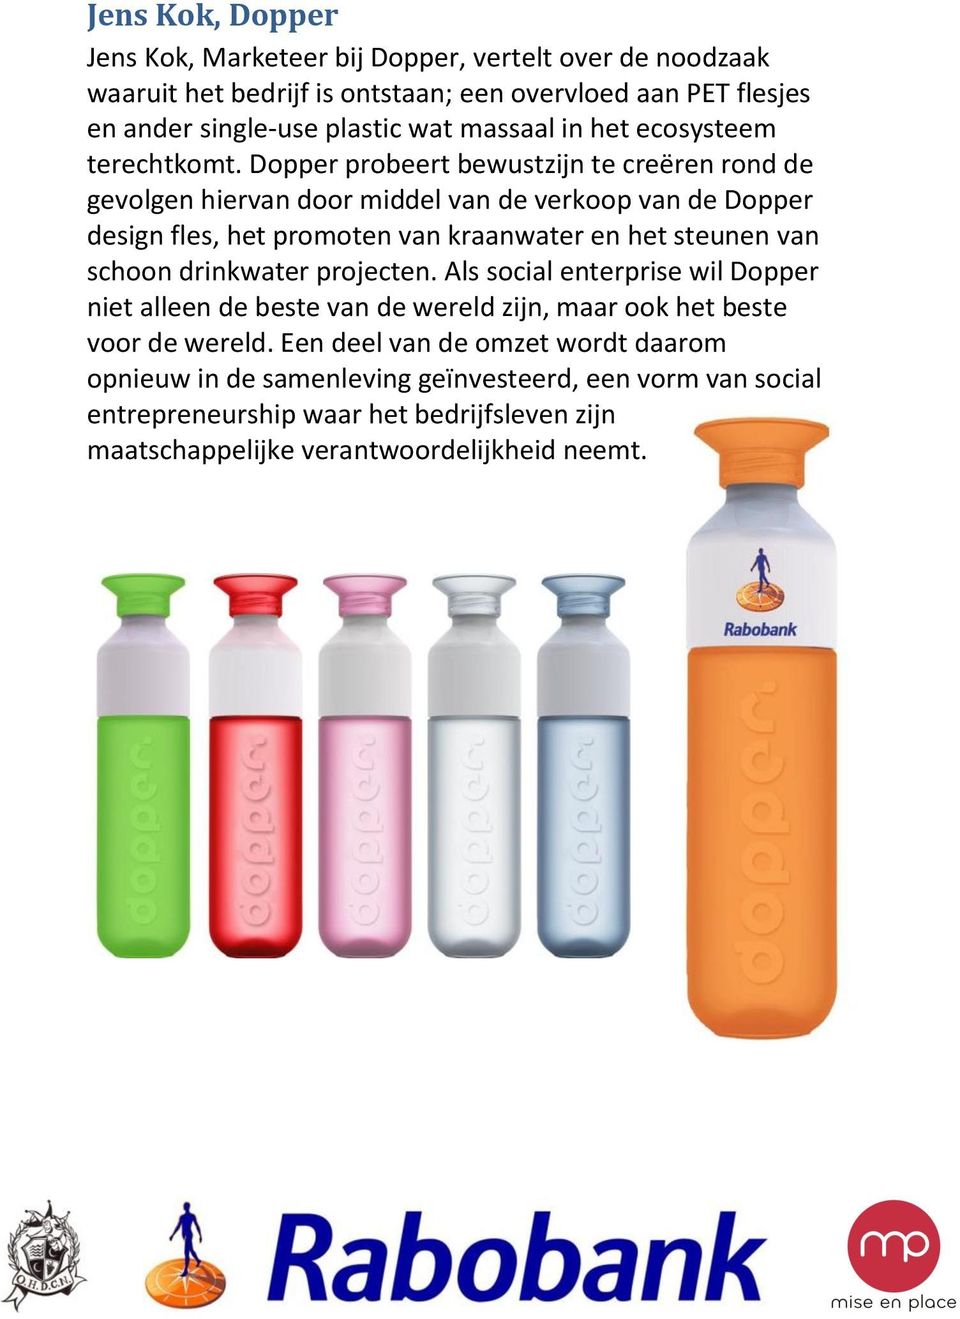 Dopper probeert bewustzijn te creëren rond de gevolgen hiervan door middel van de verkoop van de Dopper design fles, het promoten van kraanwater en het steunen van schoon